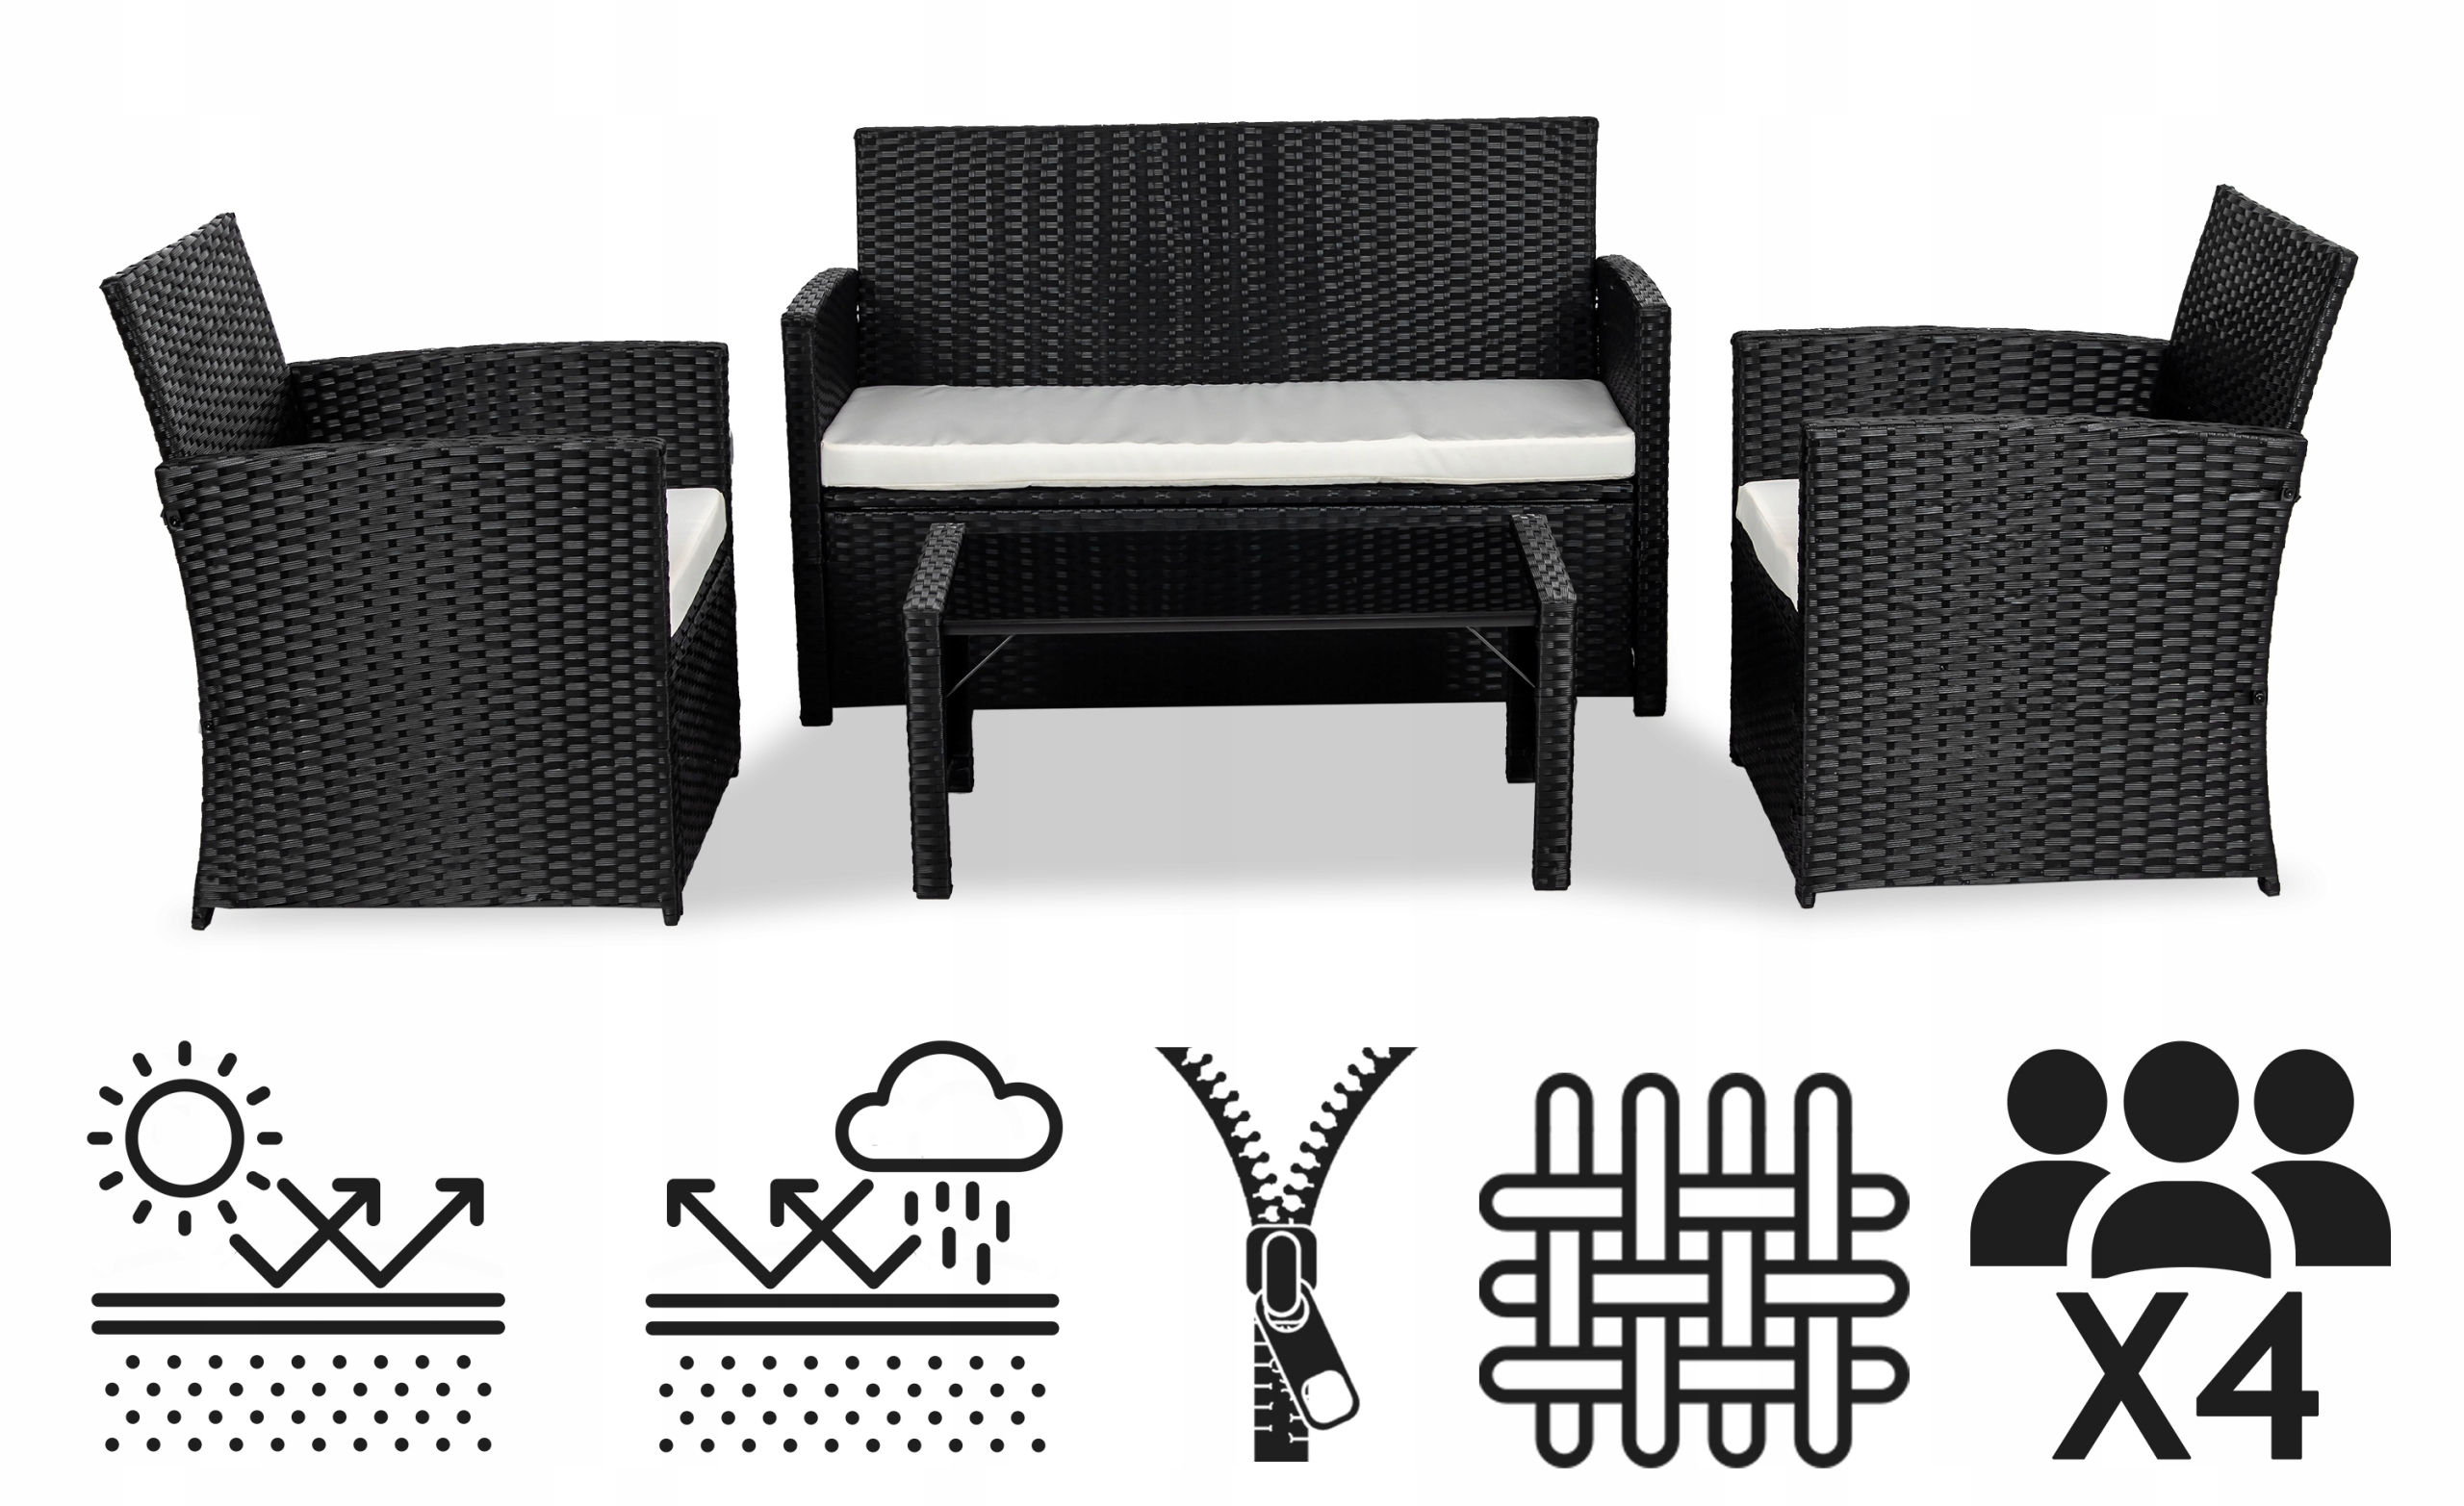 Zestaw mebli ogrodowych Sapphire ST-900 Salva - stolik + sofa + dwa fotele